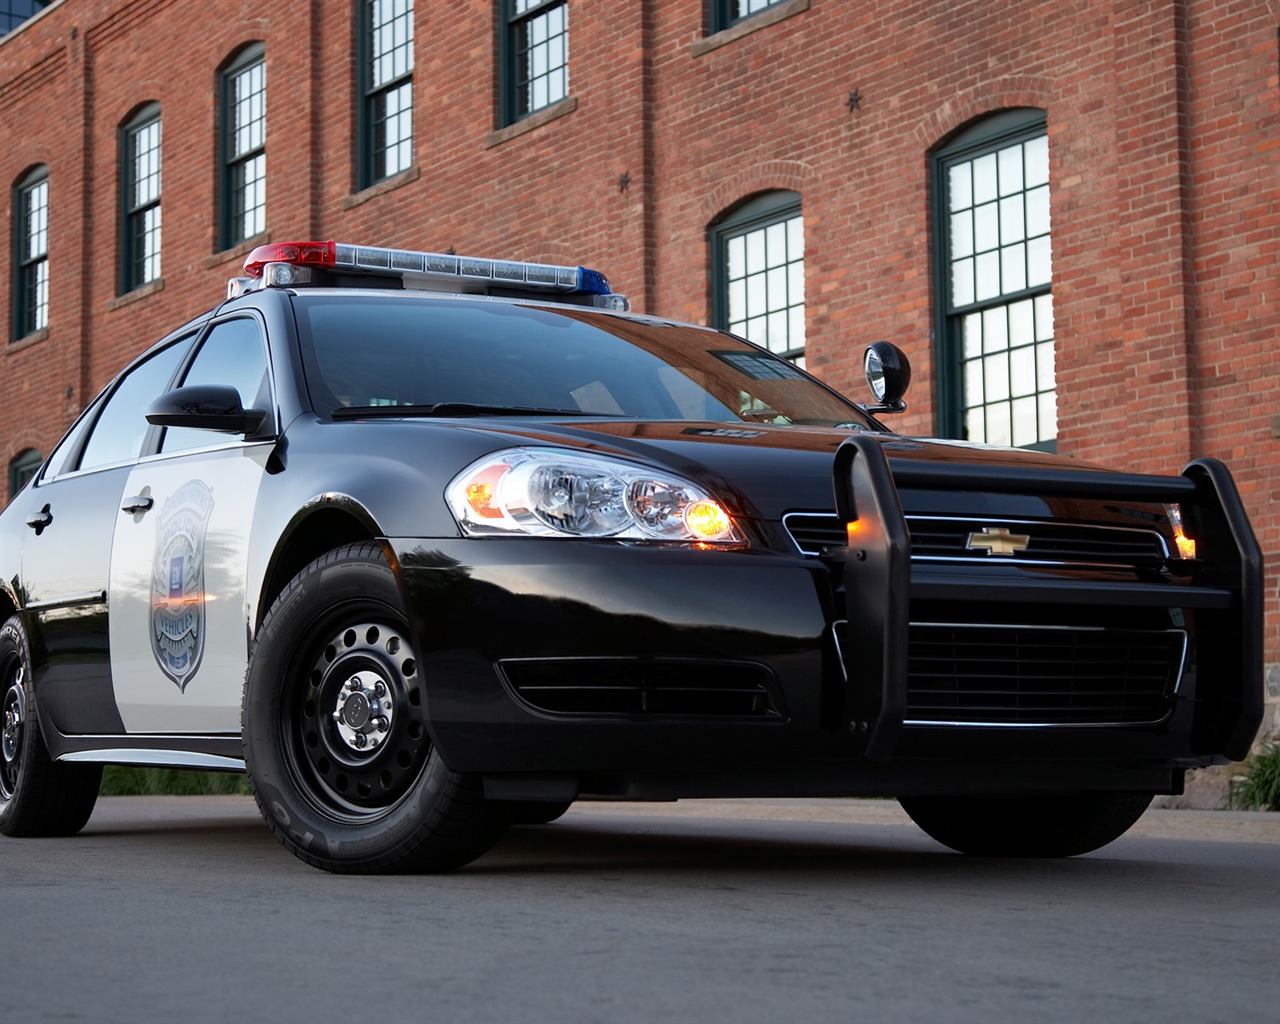 Chevrolet Impala de Policía de vehículos - 2011 fondos de escritorio de alta definición #4 - 1280x1024